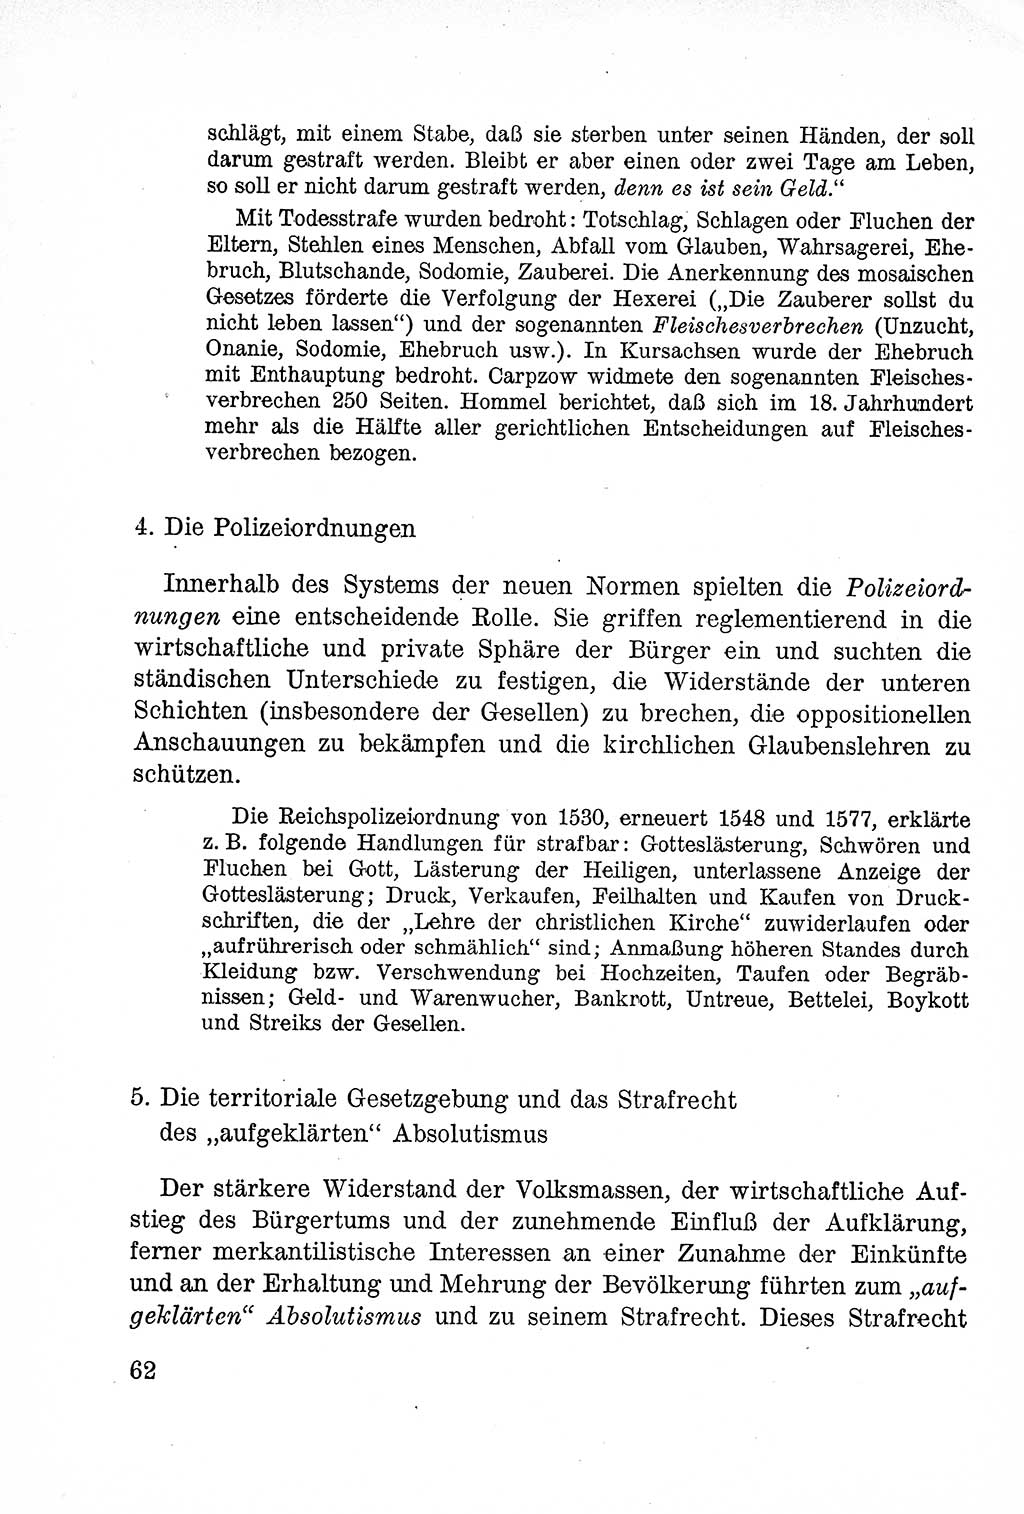 Lehrbuch des Strafrechts der Deutschen Demokratischen Republik (DDR), Allgemeiner Teil 1957, Seite 62 (Lb. Strafr. DDR AT 1957, S. 62)